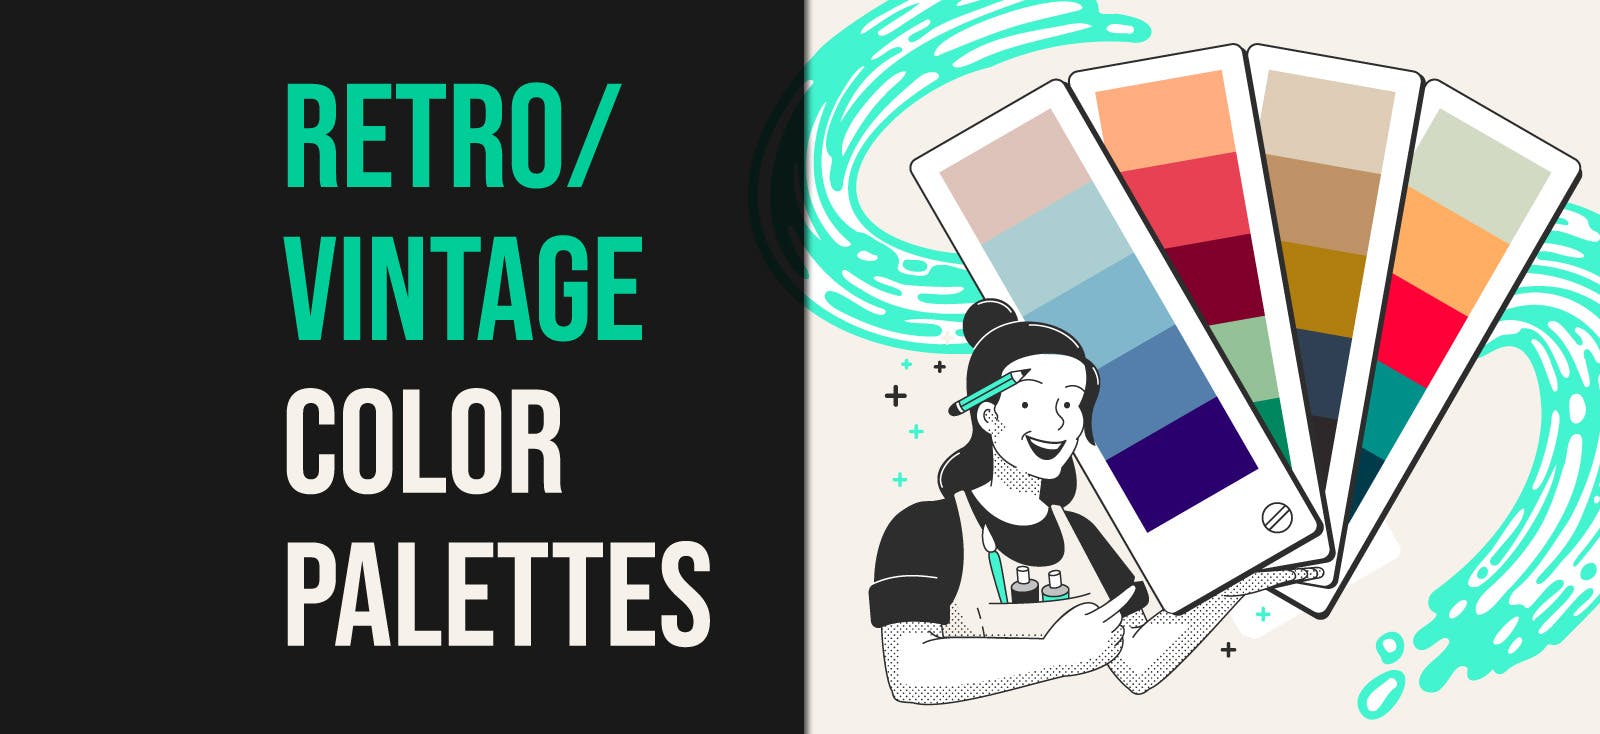 Make A Retro / Vintage Color Palette